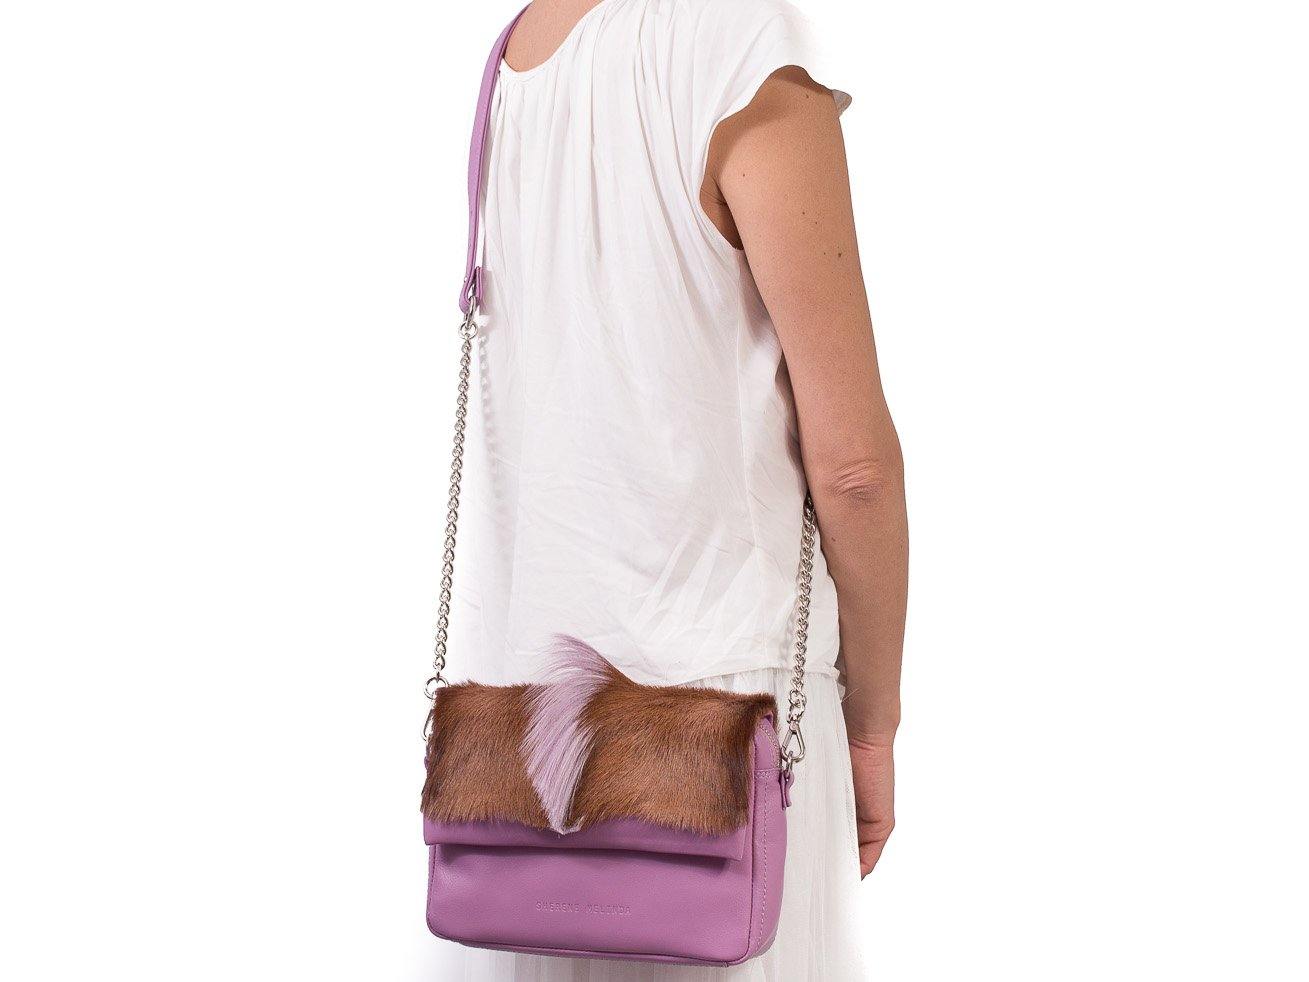 Lavender Shoulder Bag with a fan - SHERENE MELINDA